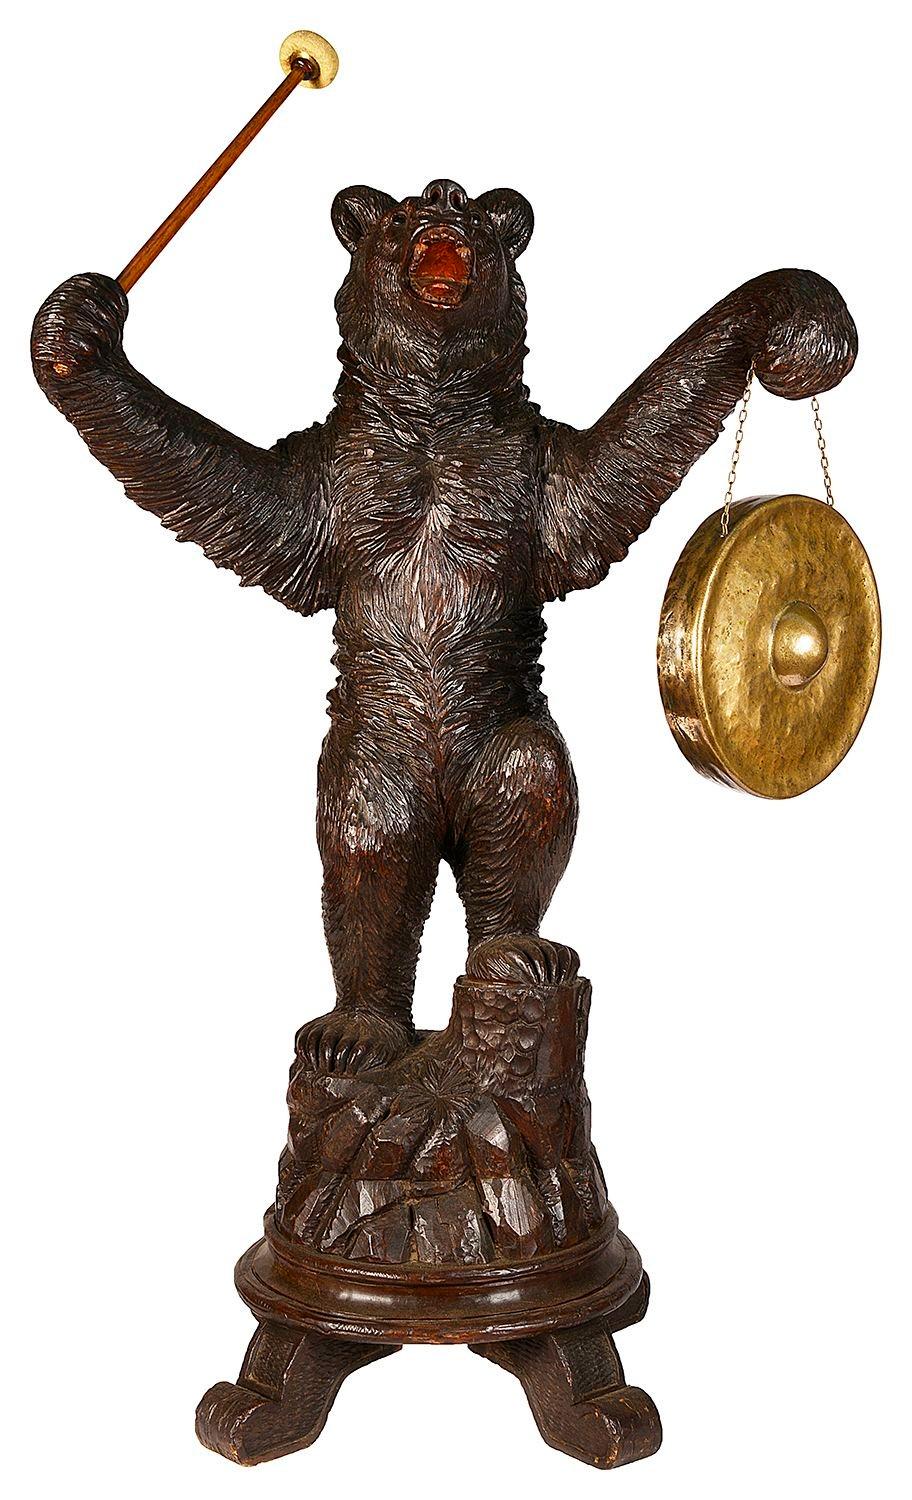 Un ours suisse sculpté de la Forêt-Noire, tenant un gong et un marteau, monté sur un affleurement rocheux sculpté.
 
 
Lot 73 YZZZ 62138